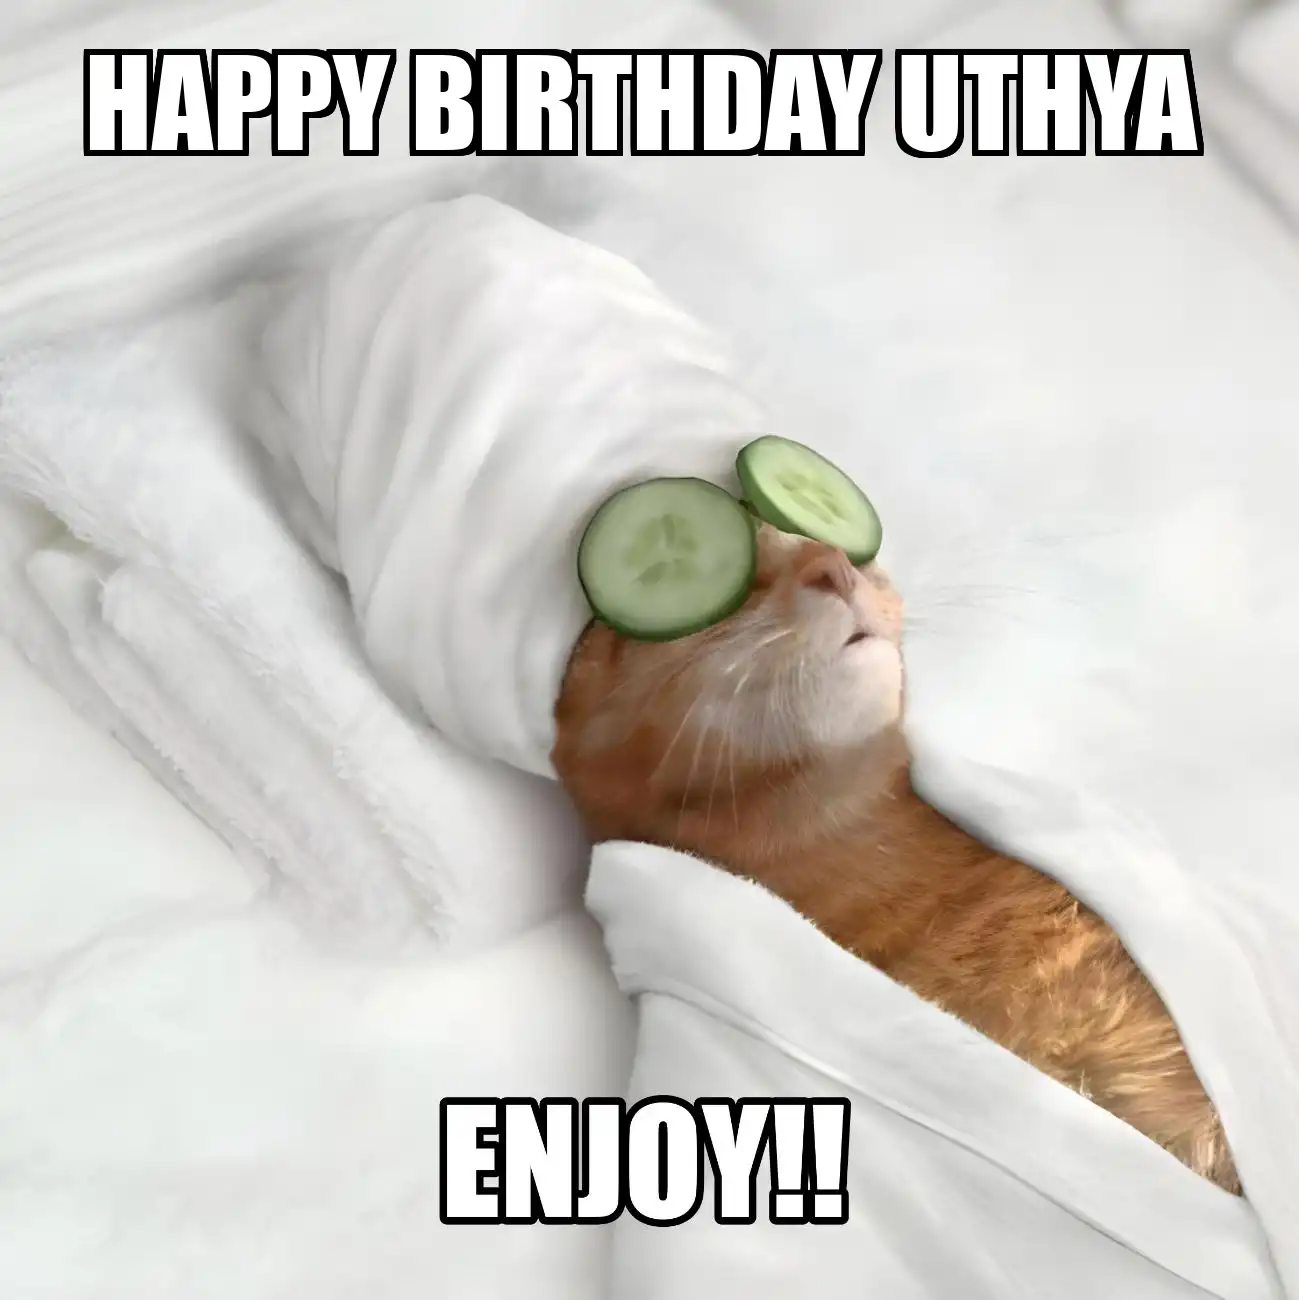 Happy Birthday Uthya Enjoy Cat Meme